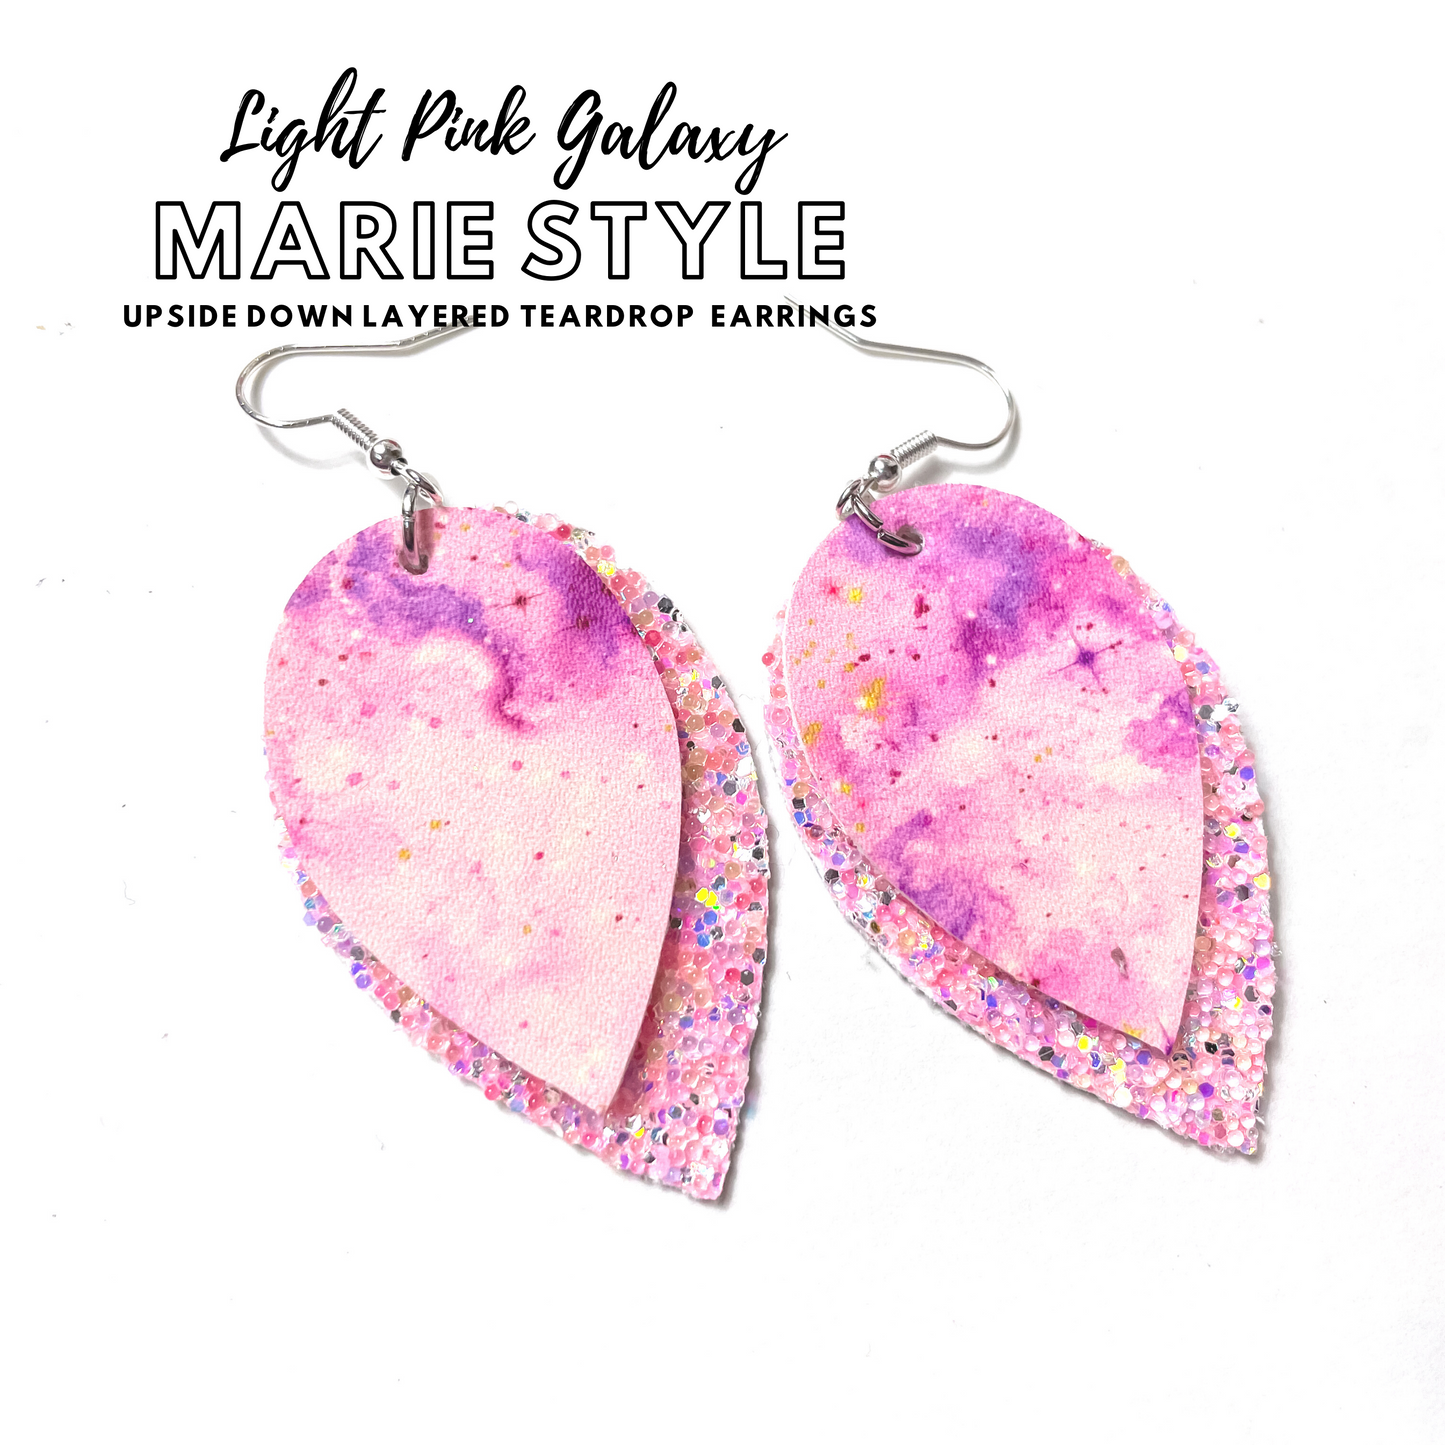 Light Pink Galaxy Earrings | Marie Style Dangle Earrings | Upside Down Layered Teardrop Shape